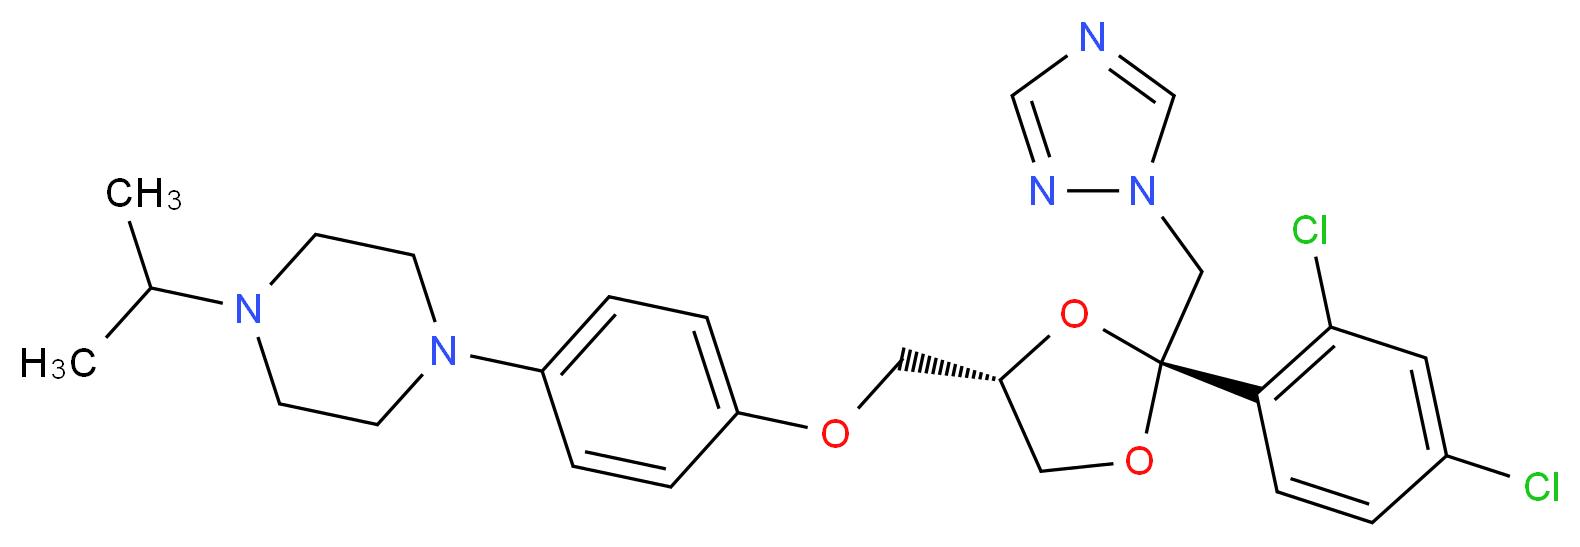 Terconazole_Molecular_structure_CAS_67915-31-5)